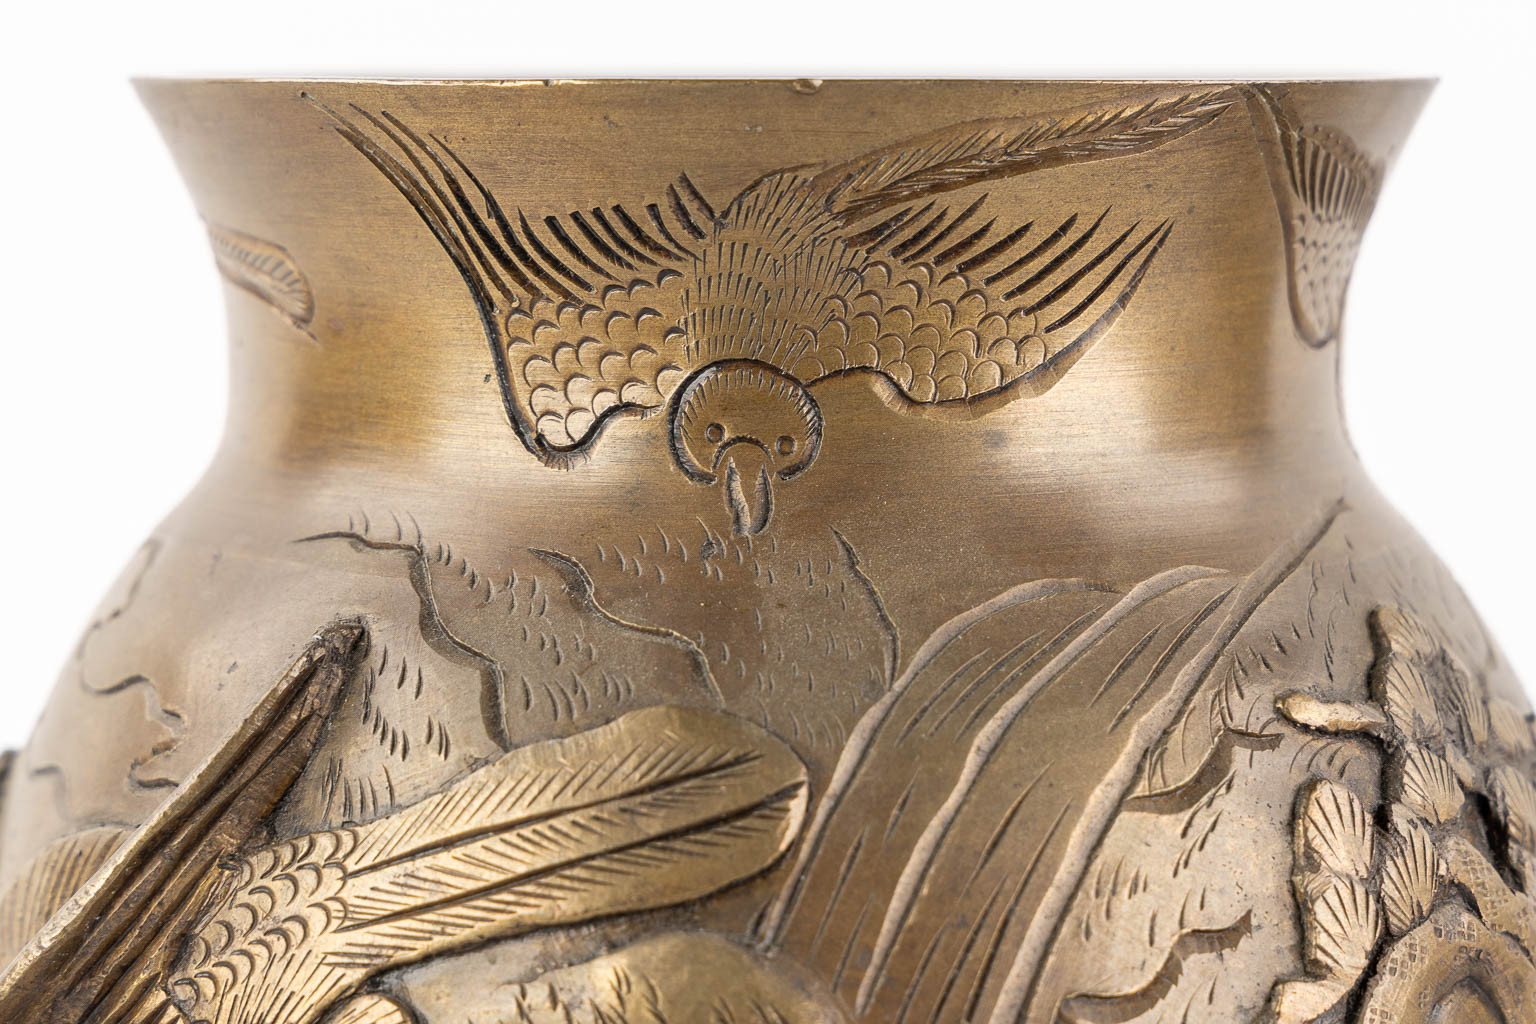 Een paar Oosterse vazen met decor van vogels en bomen, gepatineerd brons. (H:27 x D:16 cm)